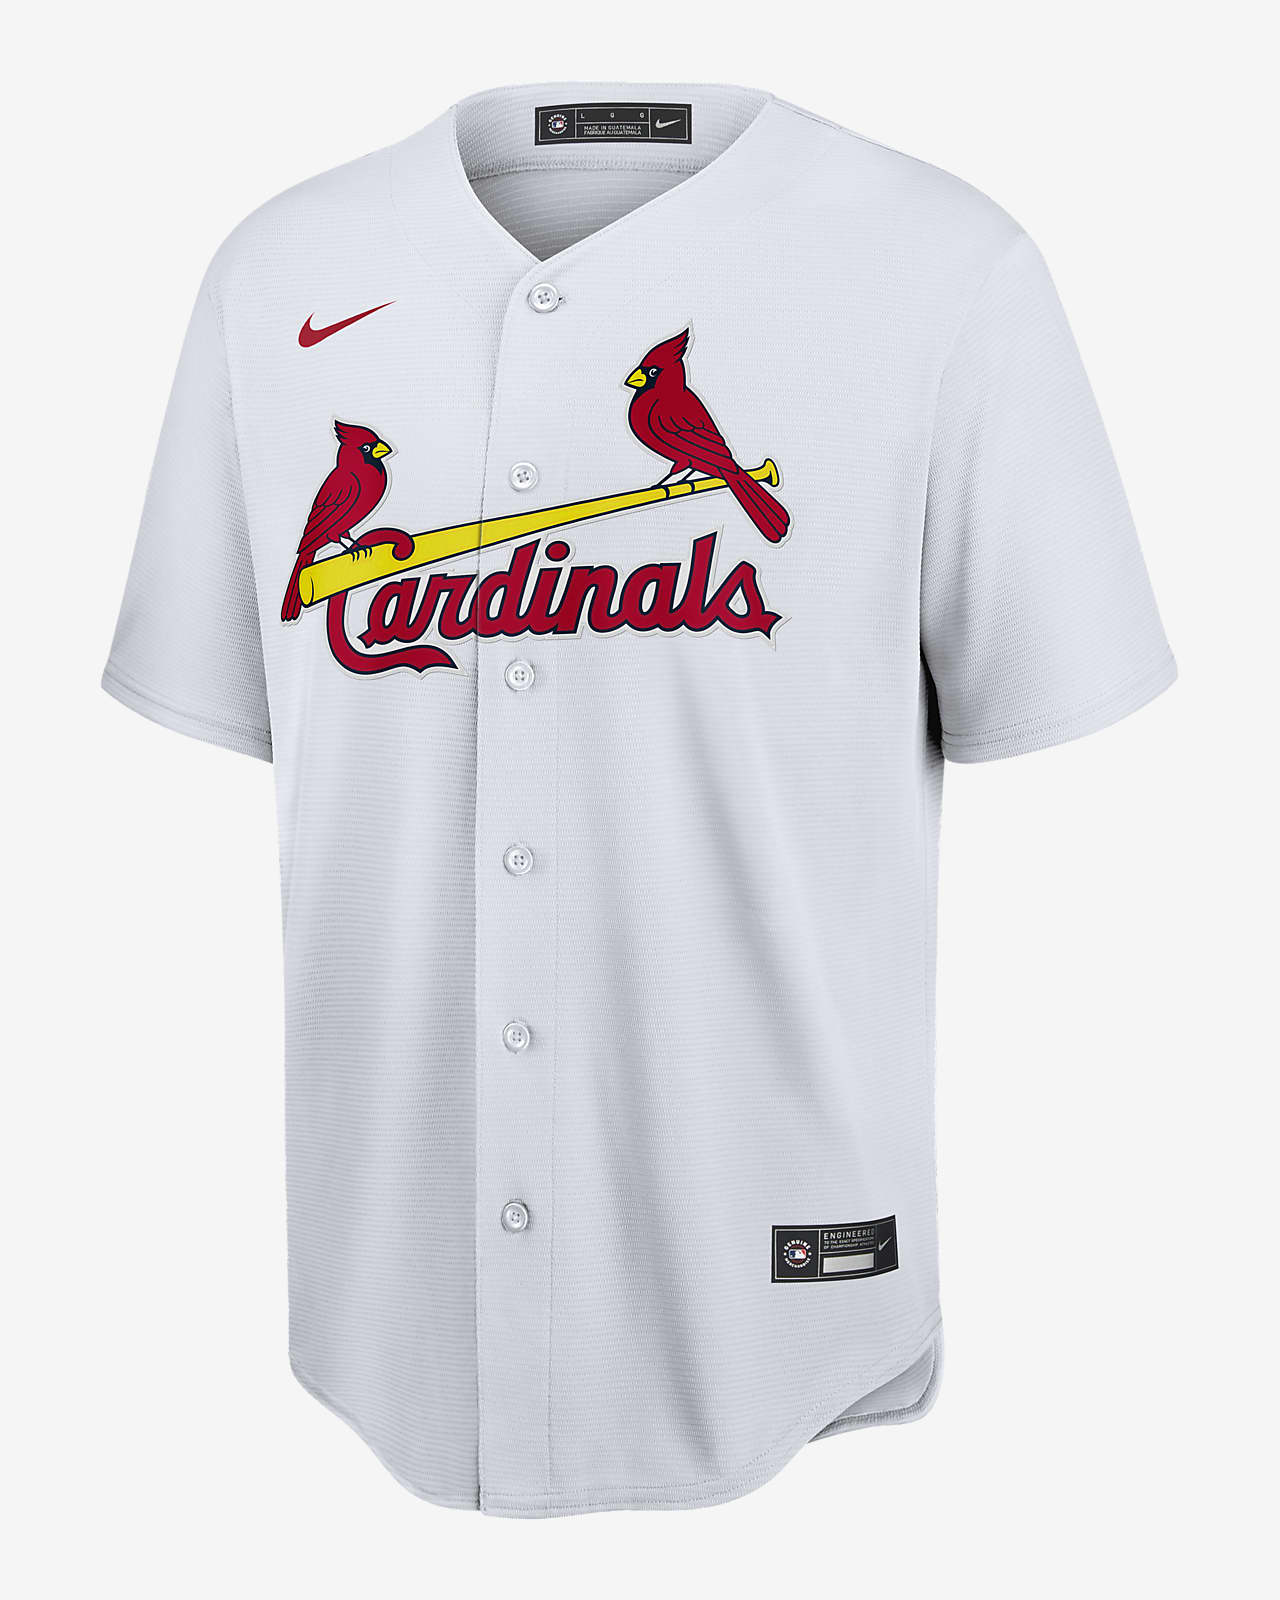 cheap cardinals gear